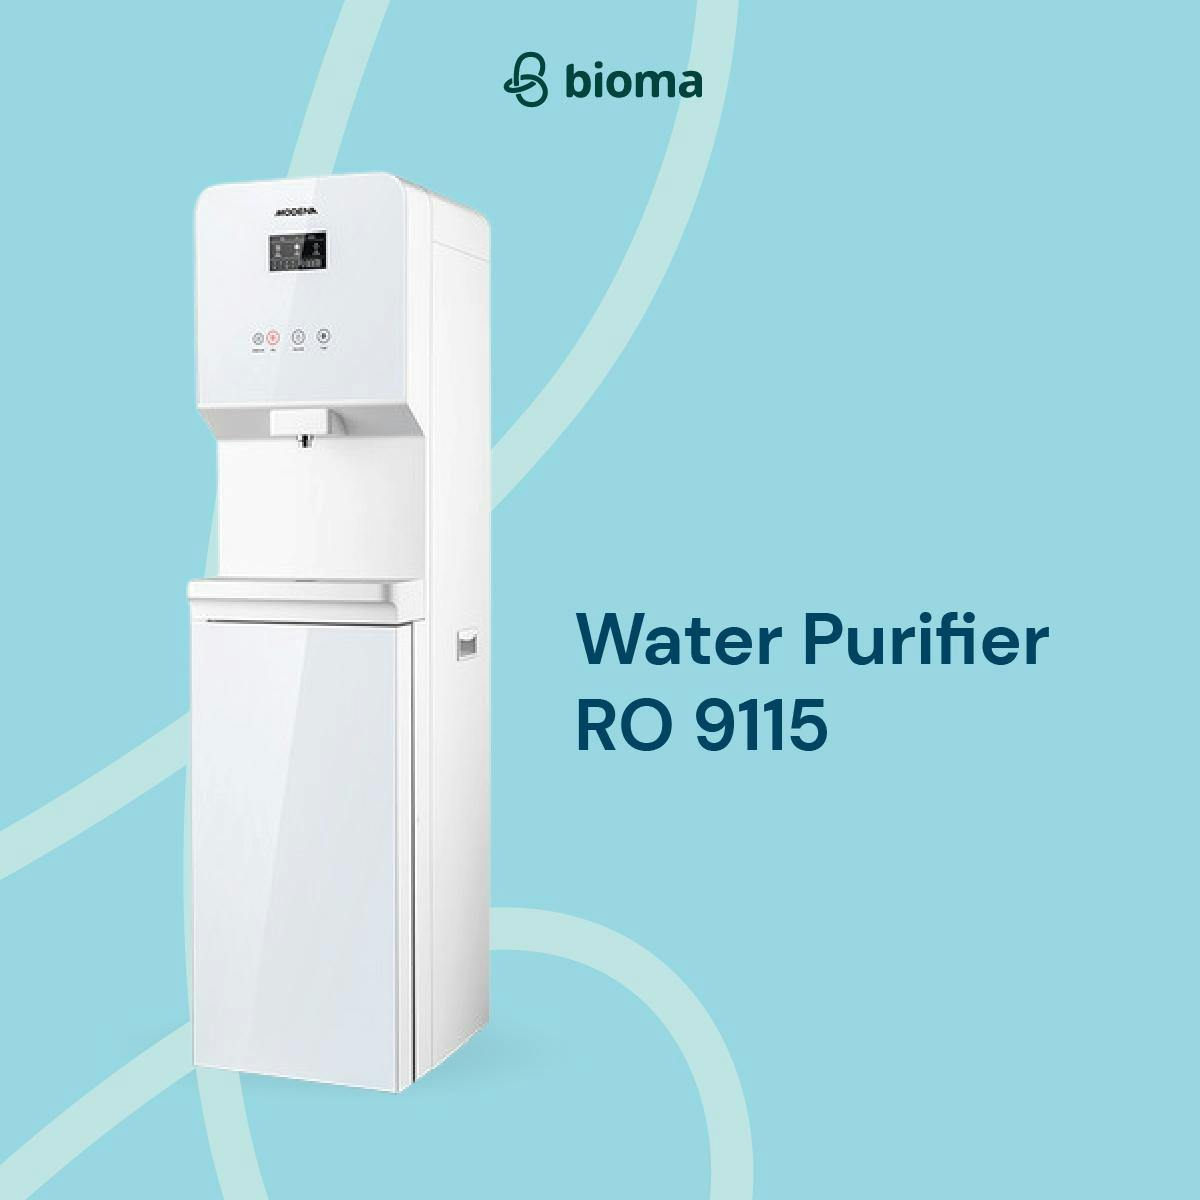 Water Purifier RO 9115